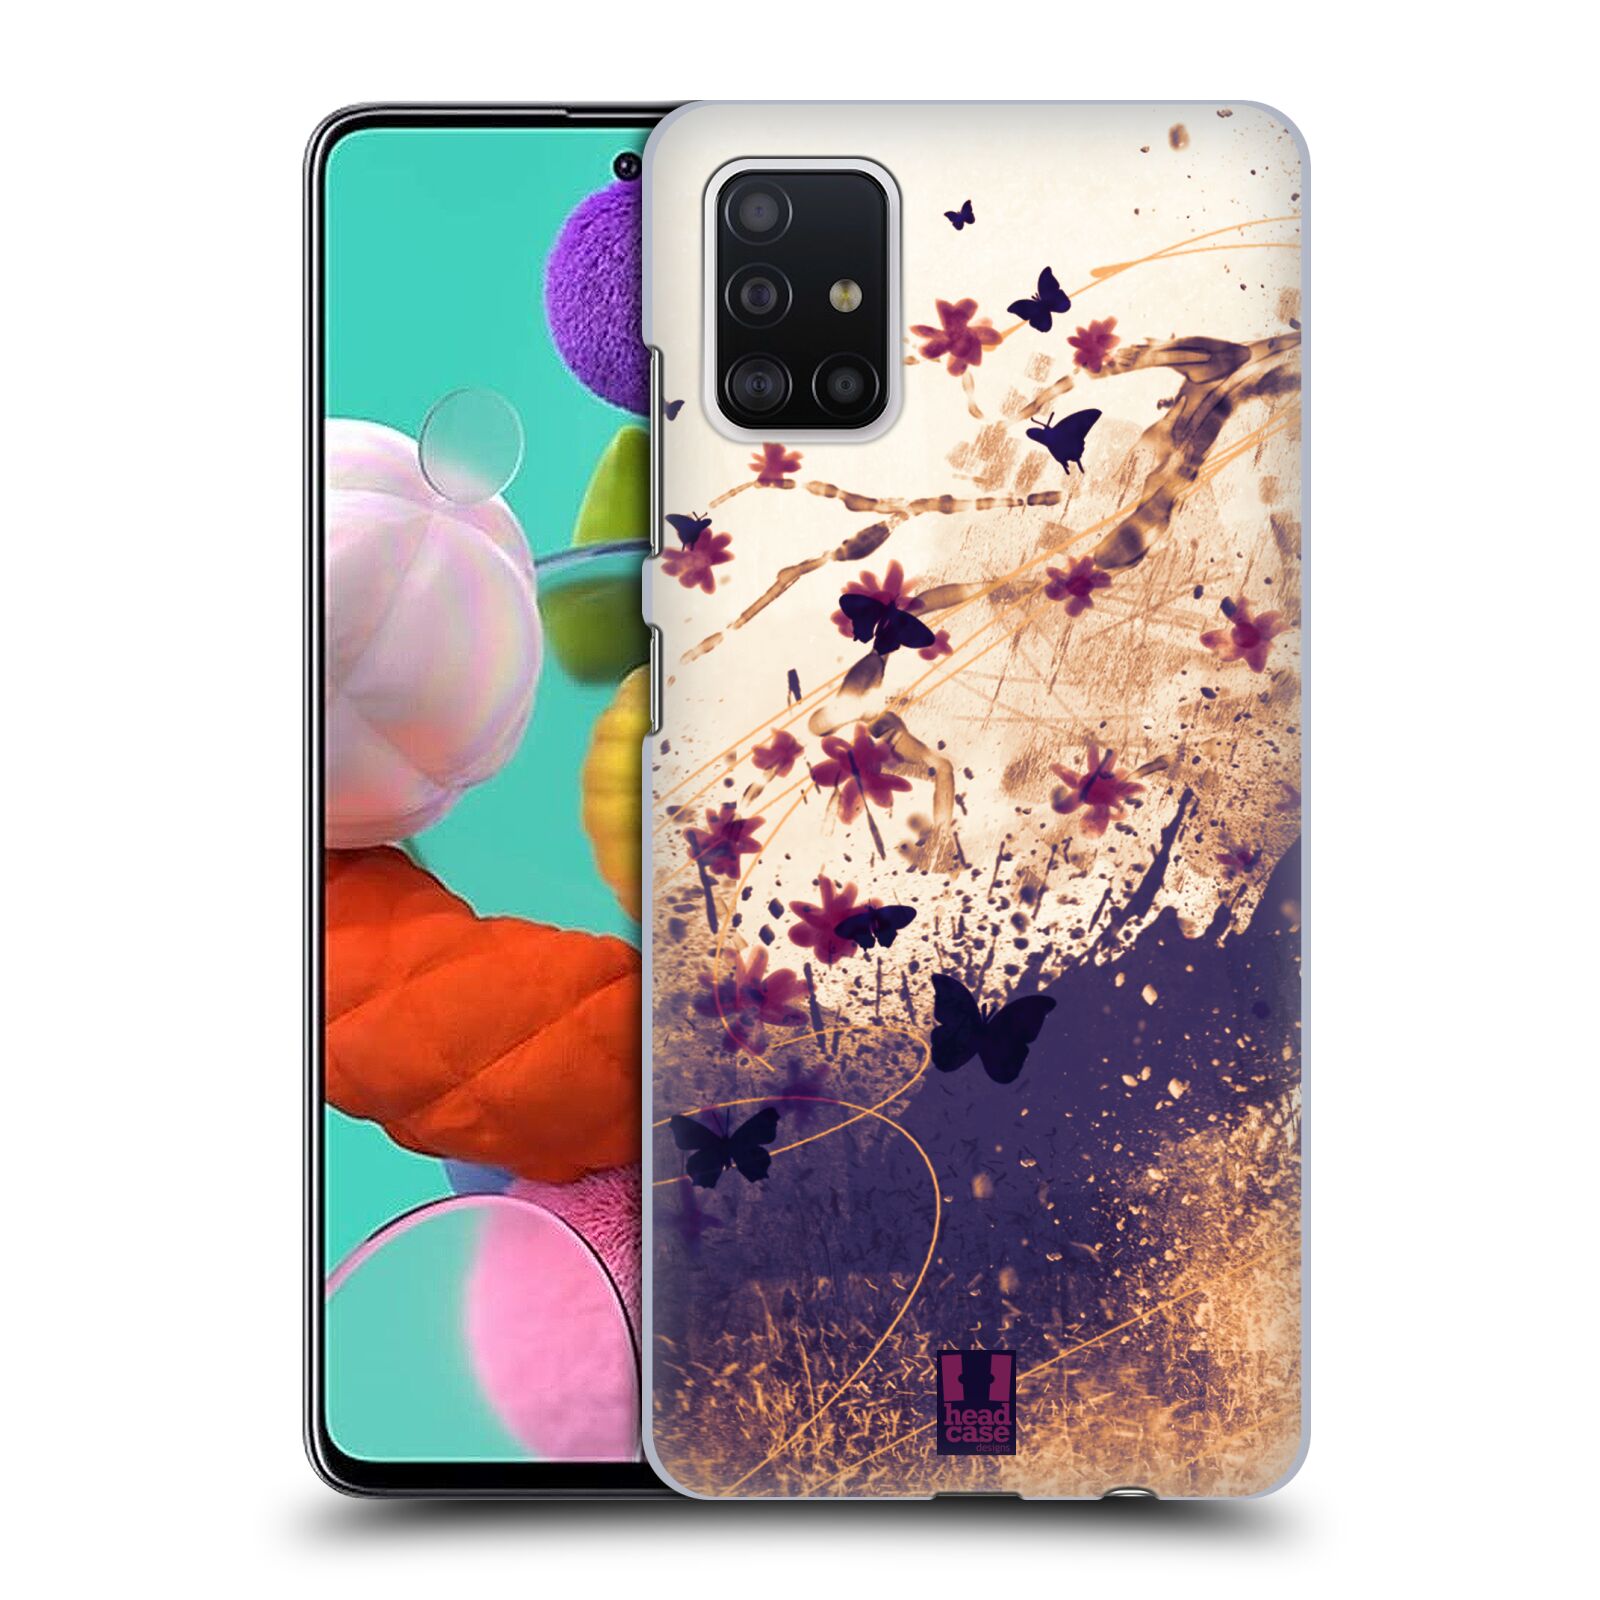 Pouzdro na mobil Samsung Galaxy A51 - HEAD CASE - vzor Kreslené barevné květiny KVĚTY A MOTÝLCI